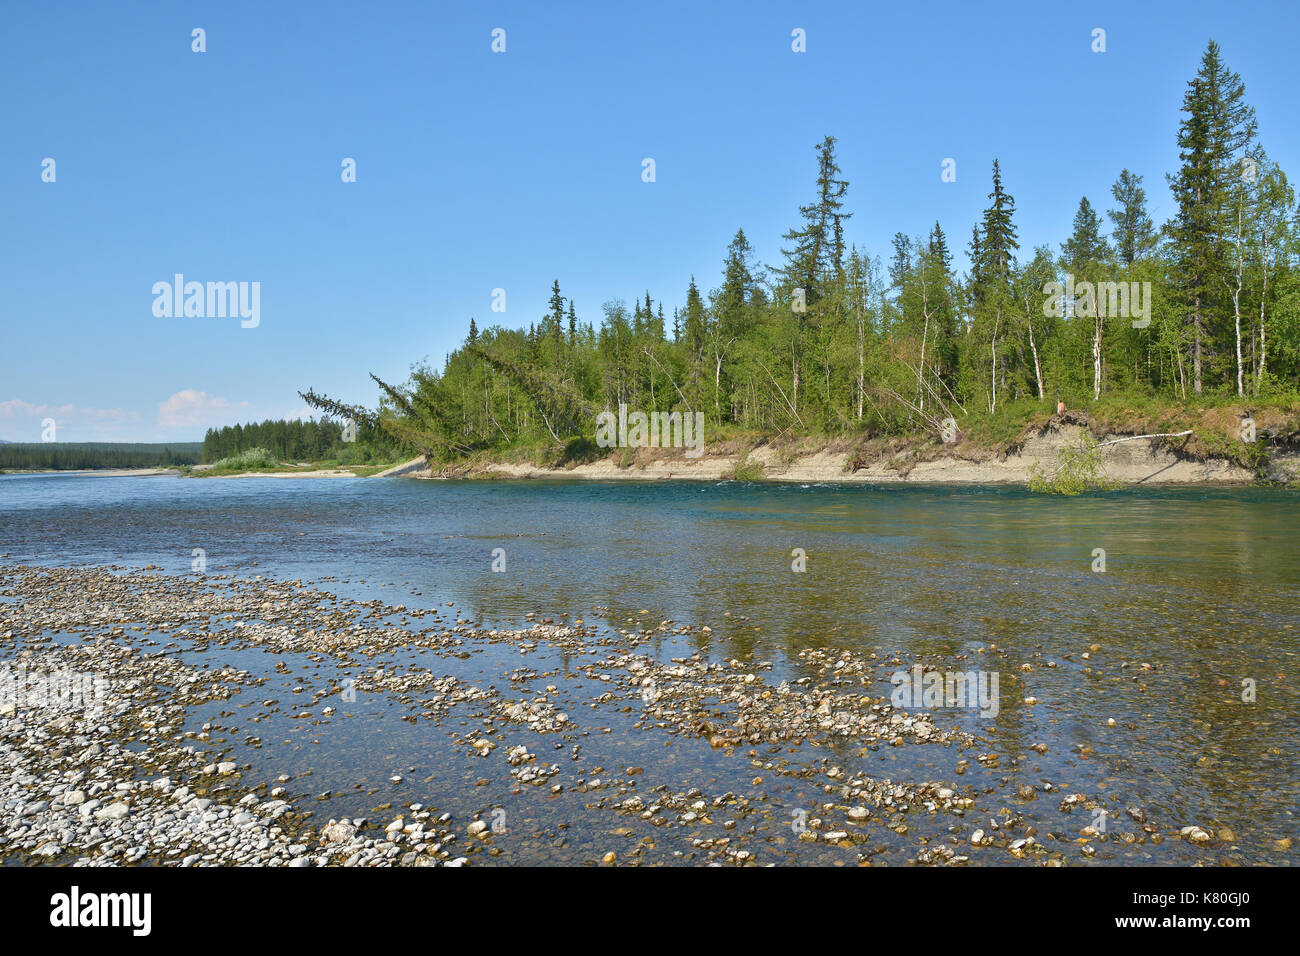 Der Fluss der polaren Ural. Sommer Wasser Landschaft im Norden Russlands. Stockfoto